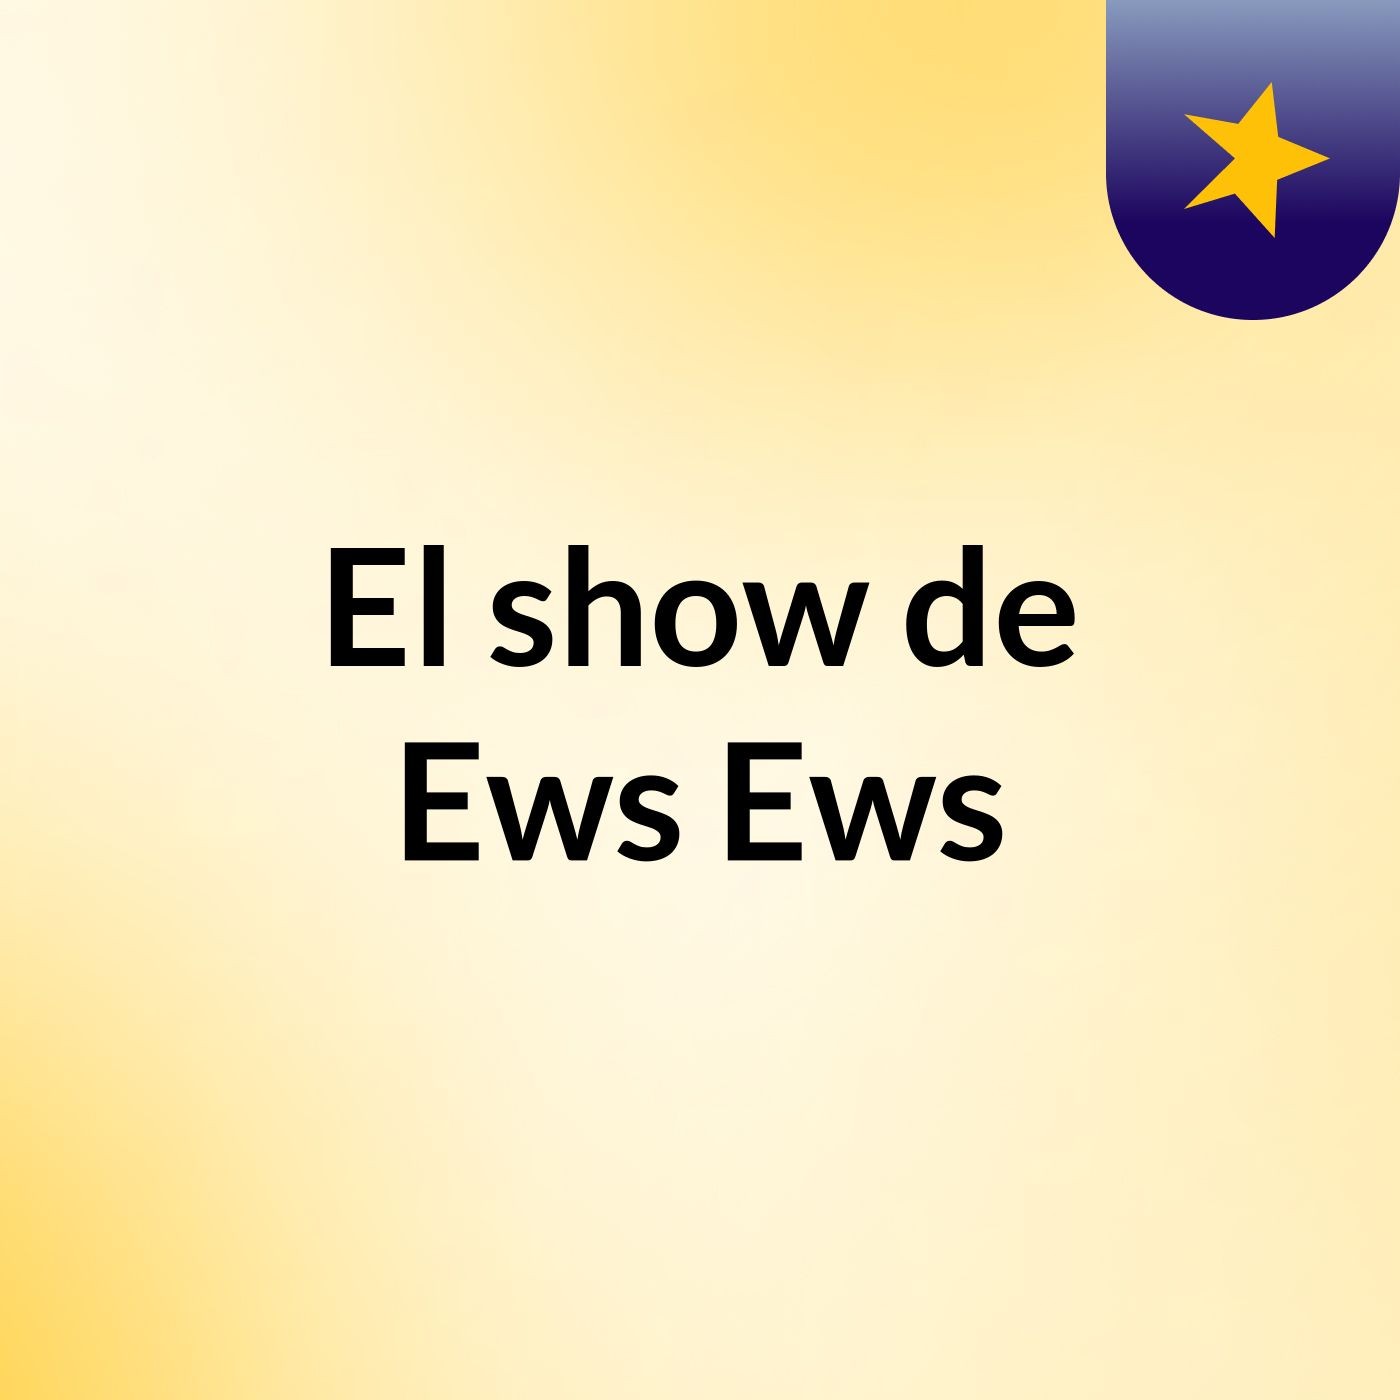 El show de Ews Ews